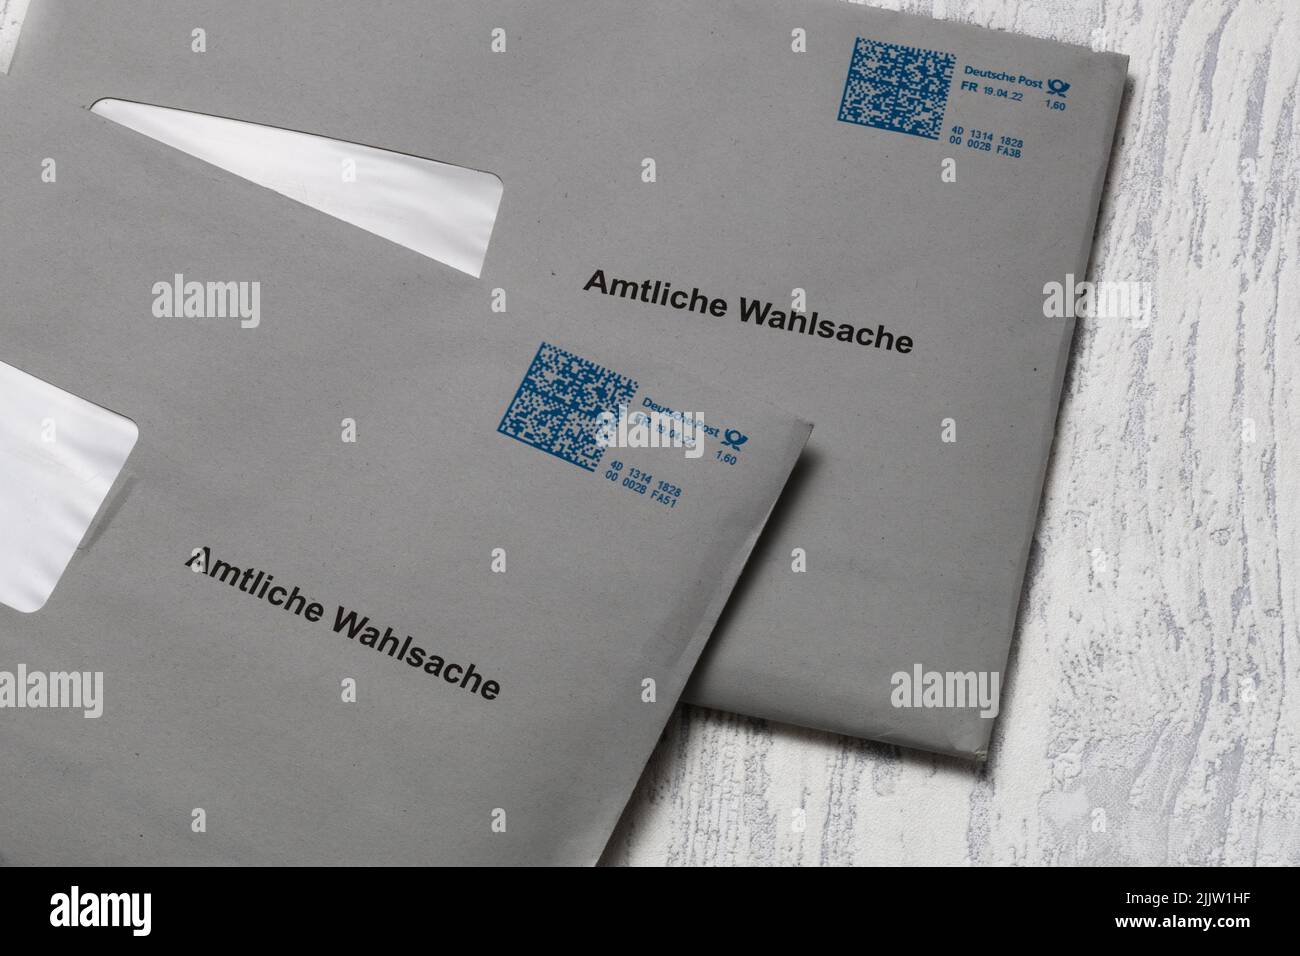 Oldenburg, Allemagne, 29 avril 2022, lettre avec des mots allemands amtliche wahlsache traduction notification officielle des élections Banque D'Images